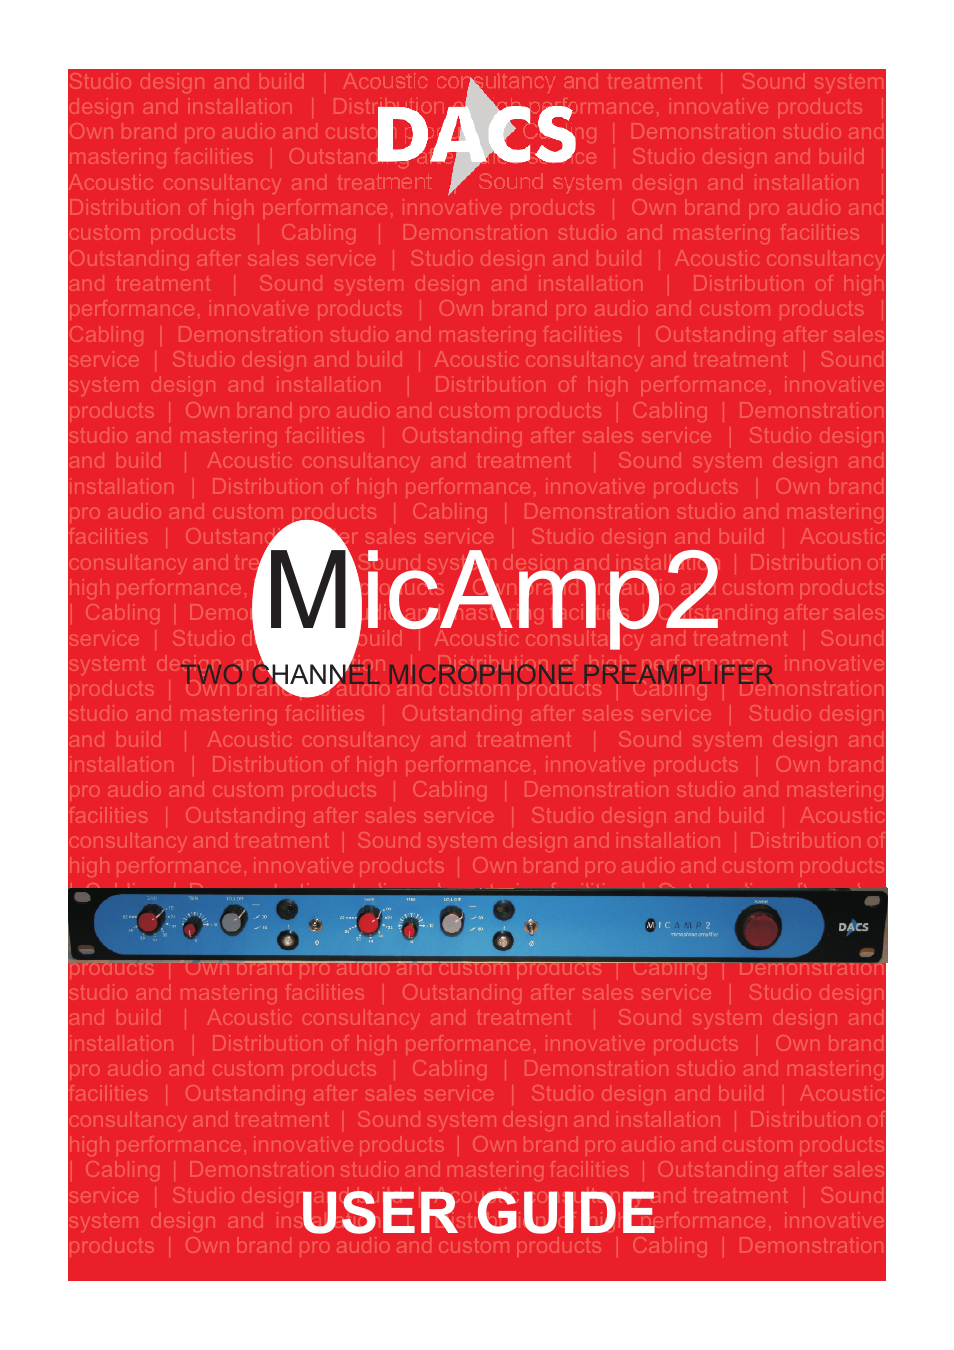 MicAmp2